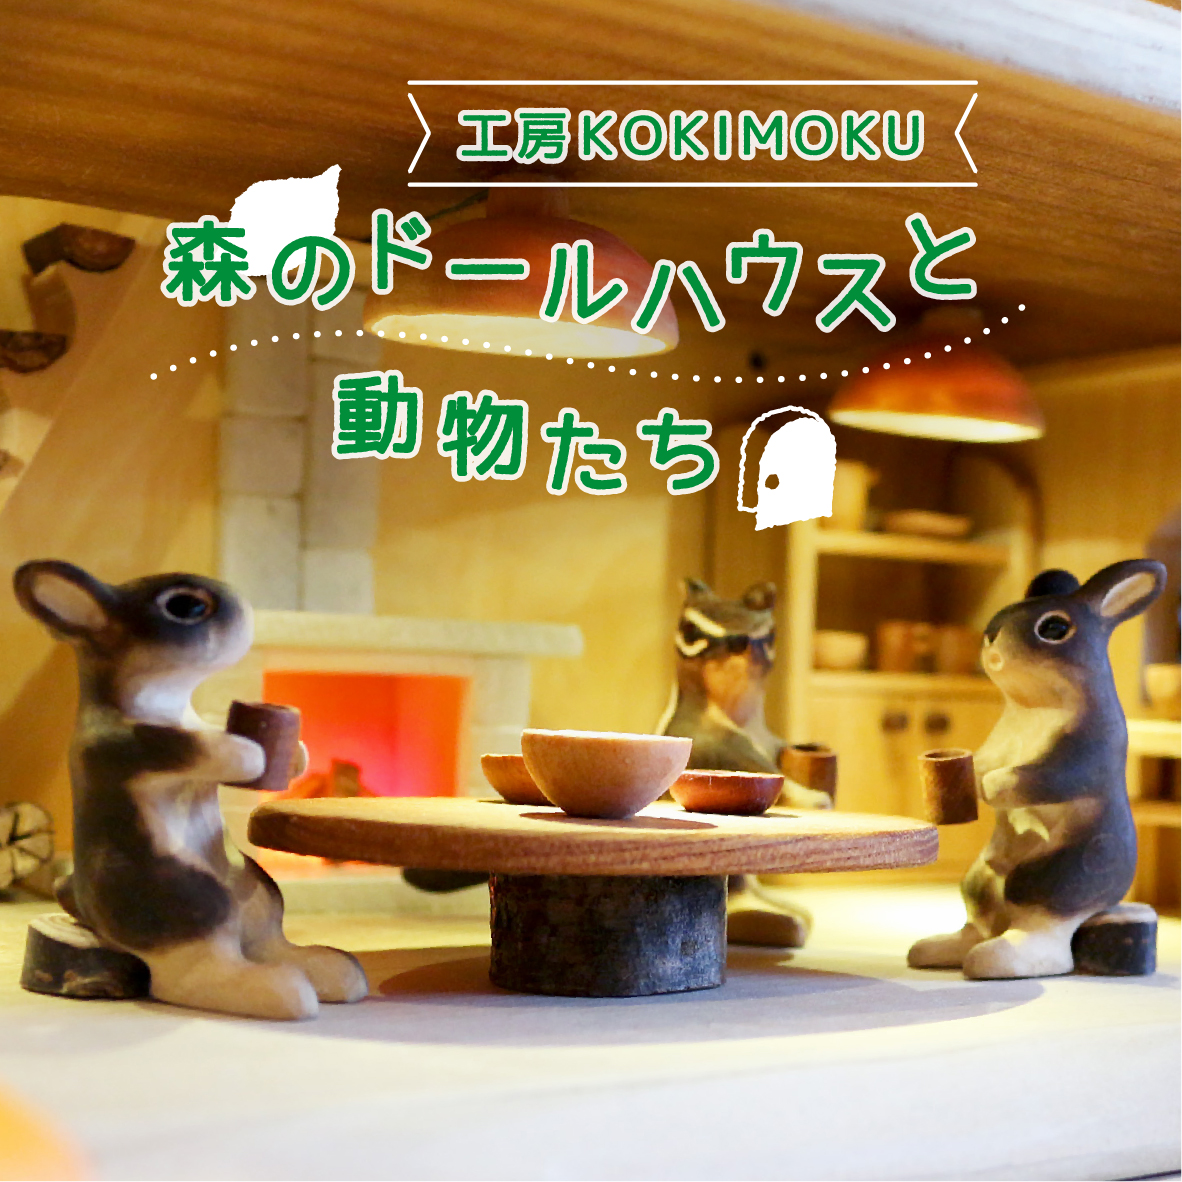 【イベント】工房KOKIMOKU「森のドールハウスと動物たち」